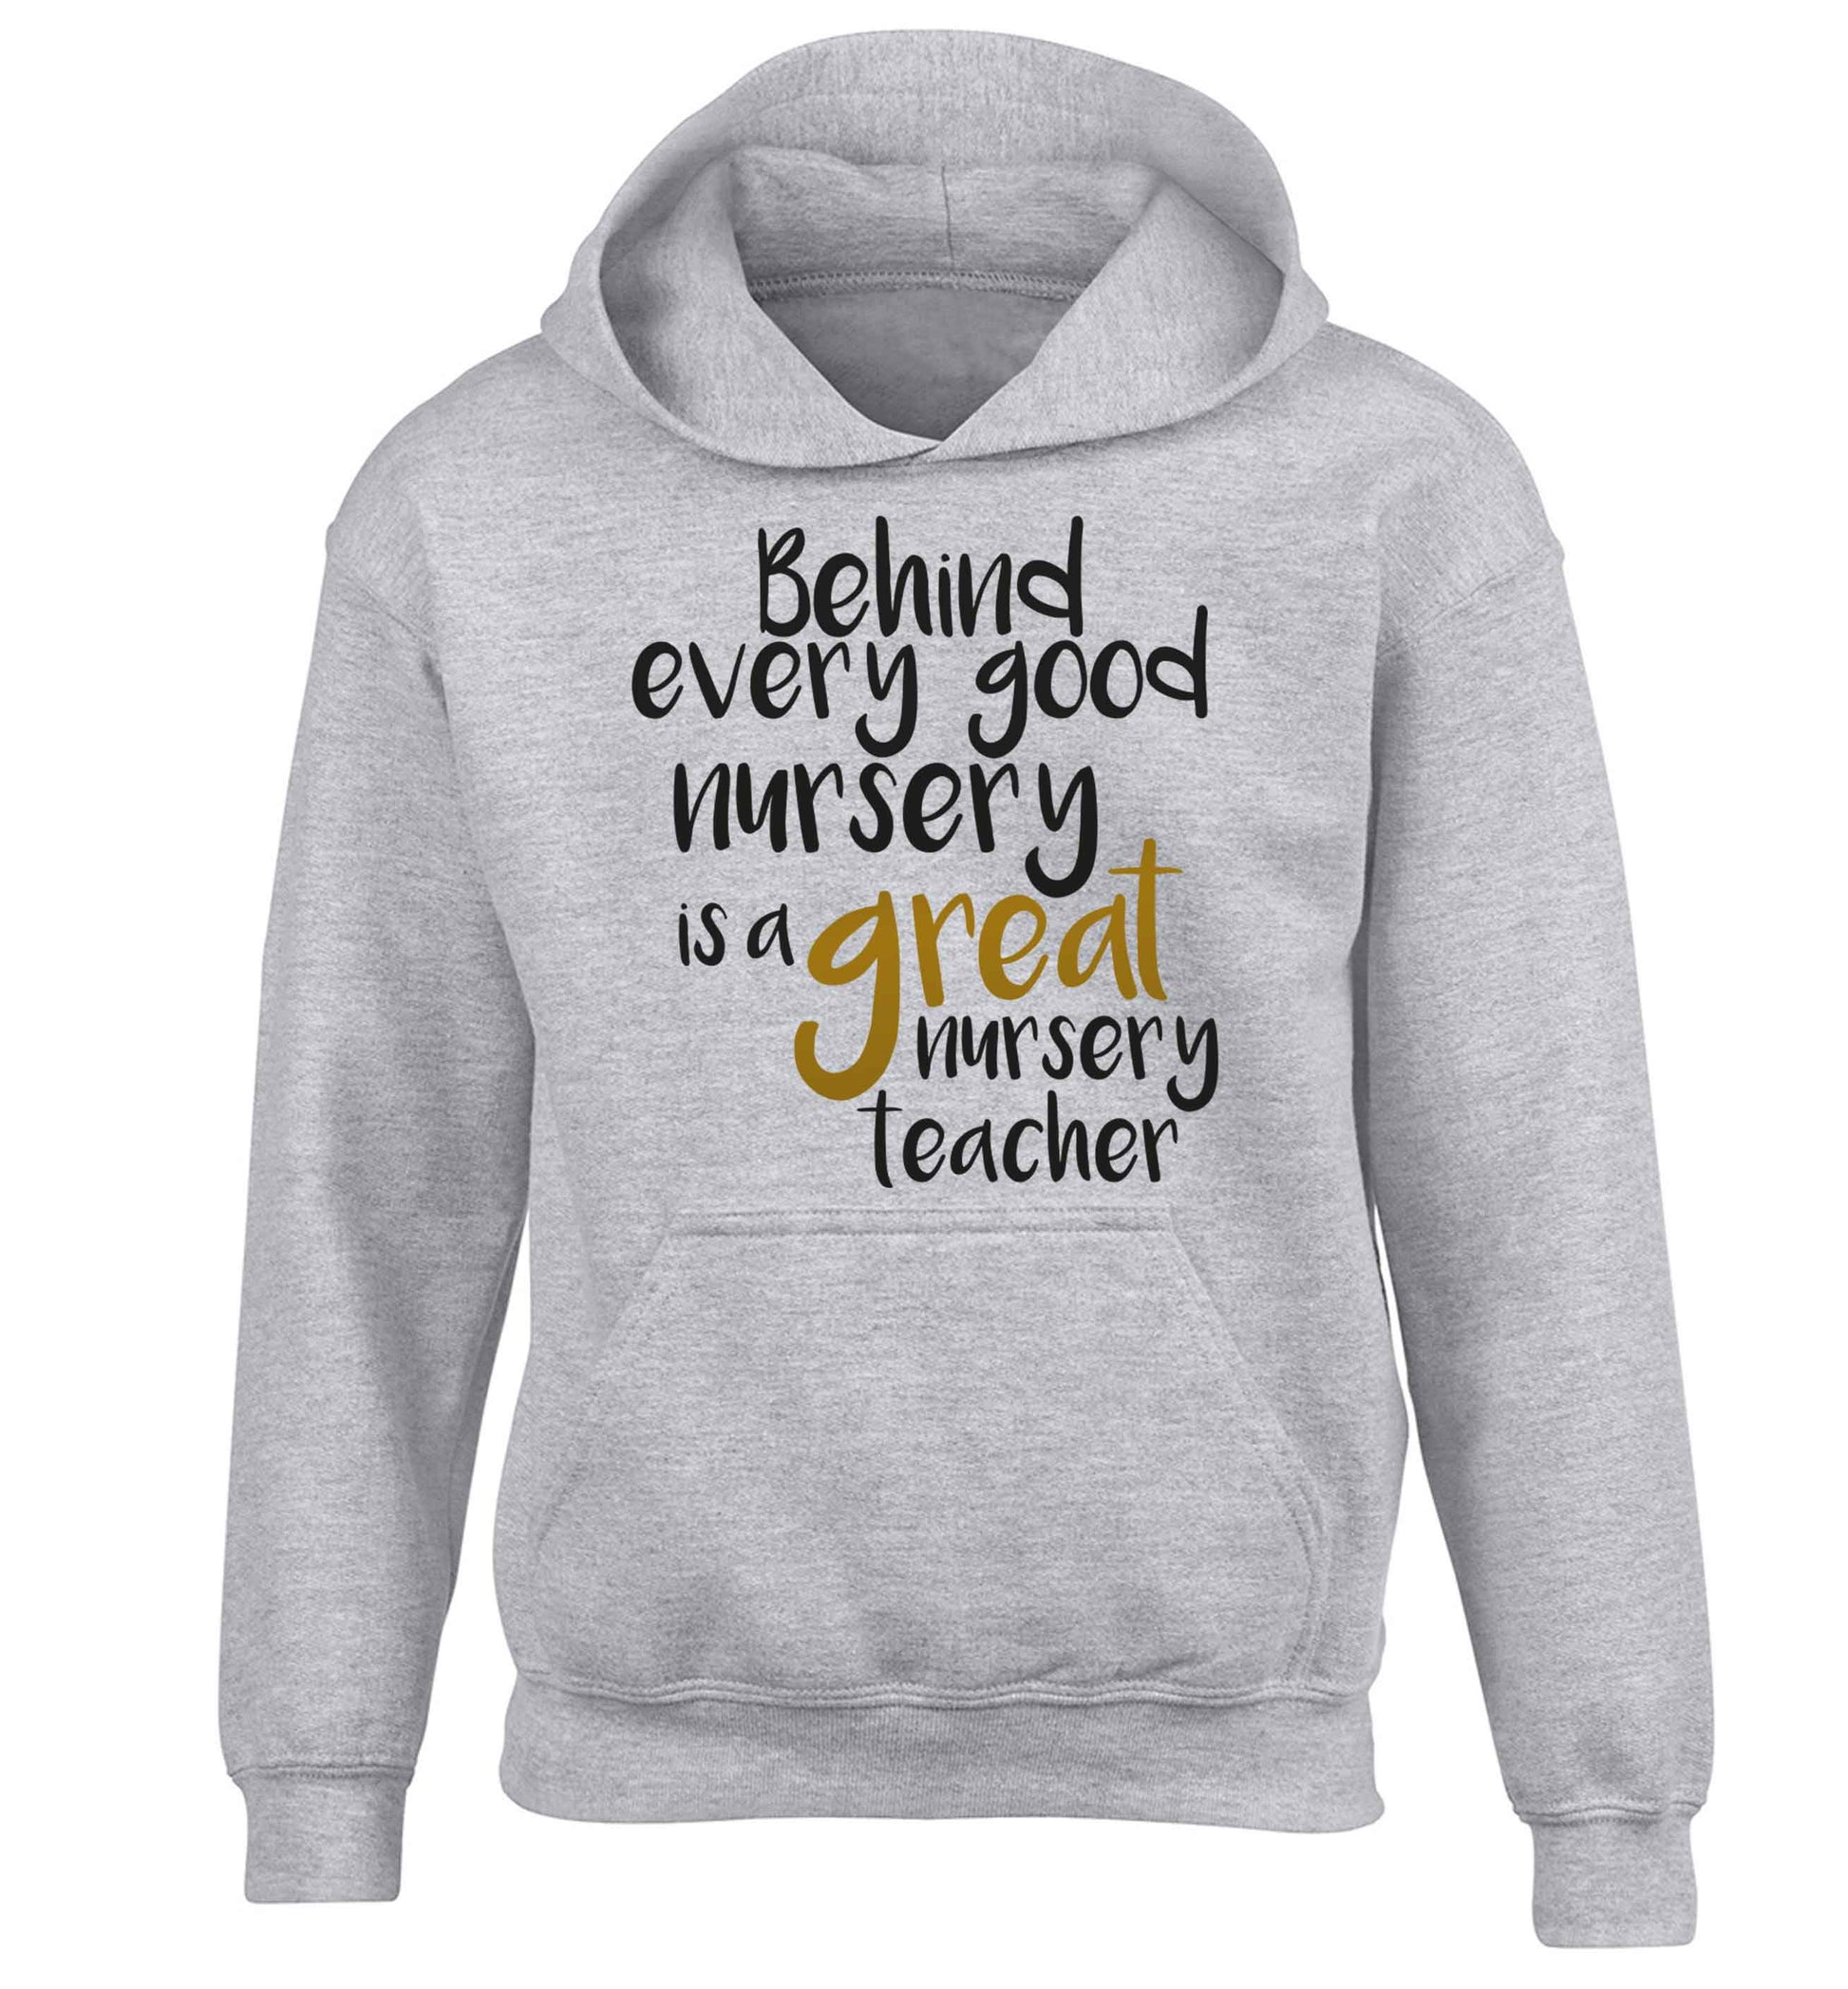 Behind every good nursery is a great nursery teacher children's grey hoodie 12-13 Years